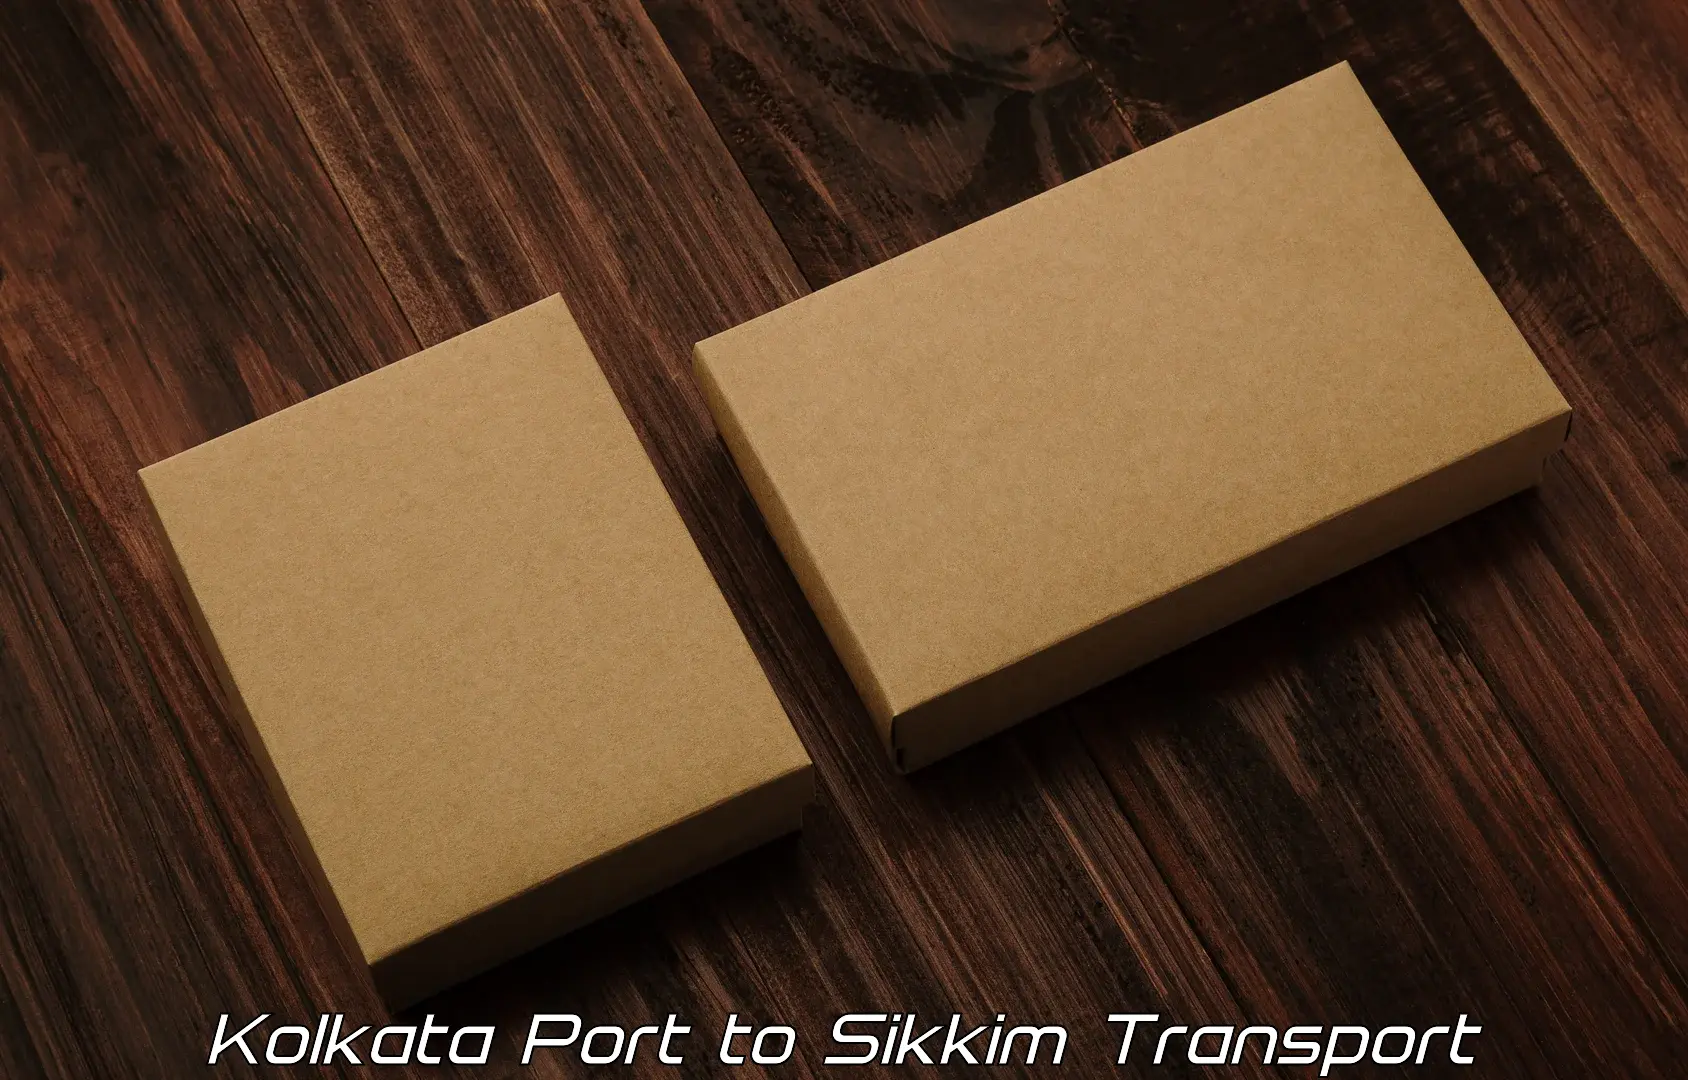 Bike shipping service Kolkata Port to South Sikkim